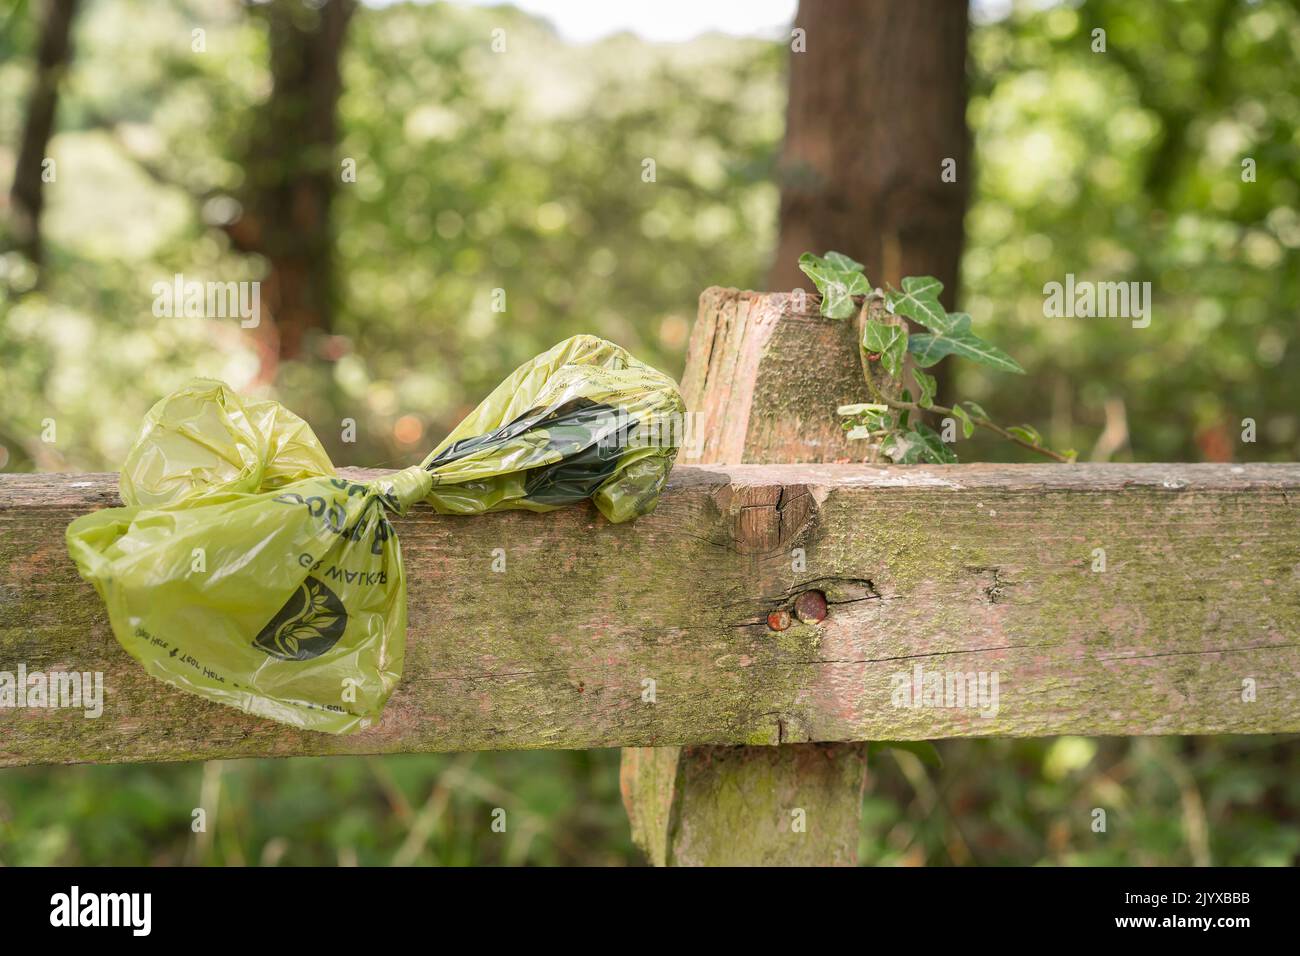 Gros plan, sac en plastique isolé de pooing pour chiens aimablement laissé par les propriétaires de chiens irresponsables sur une clôture en bois dans un coin de beauté rural, Royaume-Uni Country Park. Banque D'Images